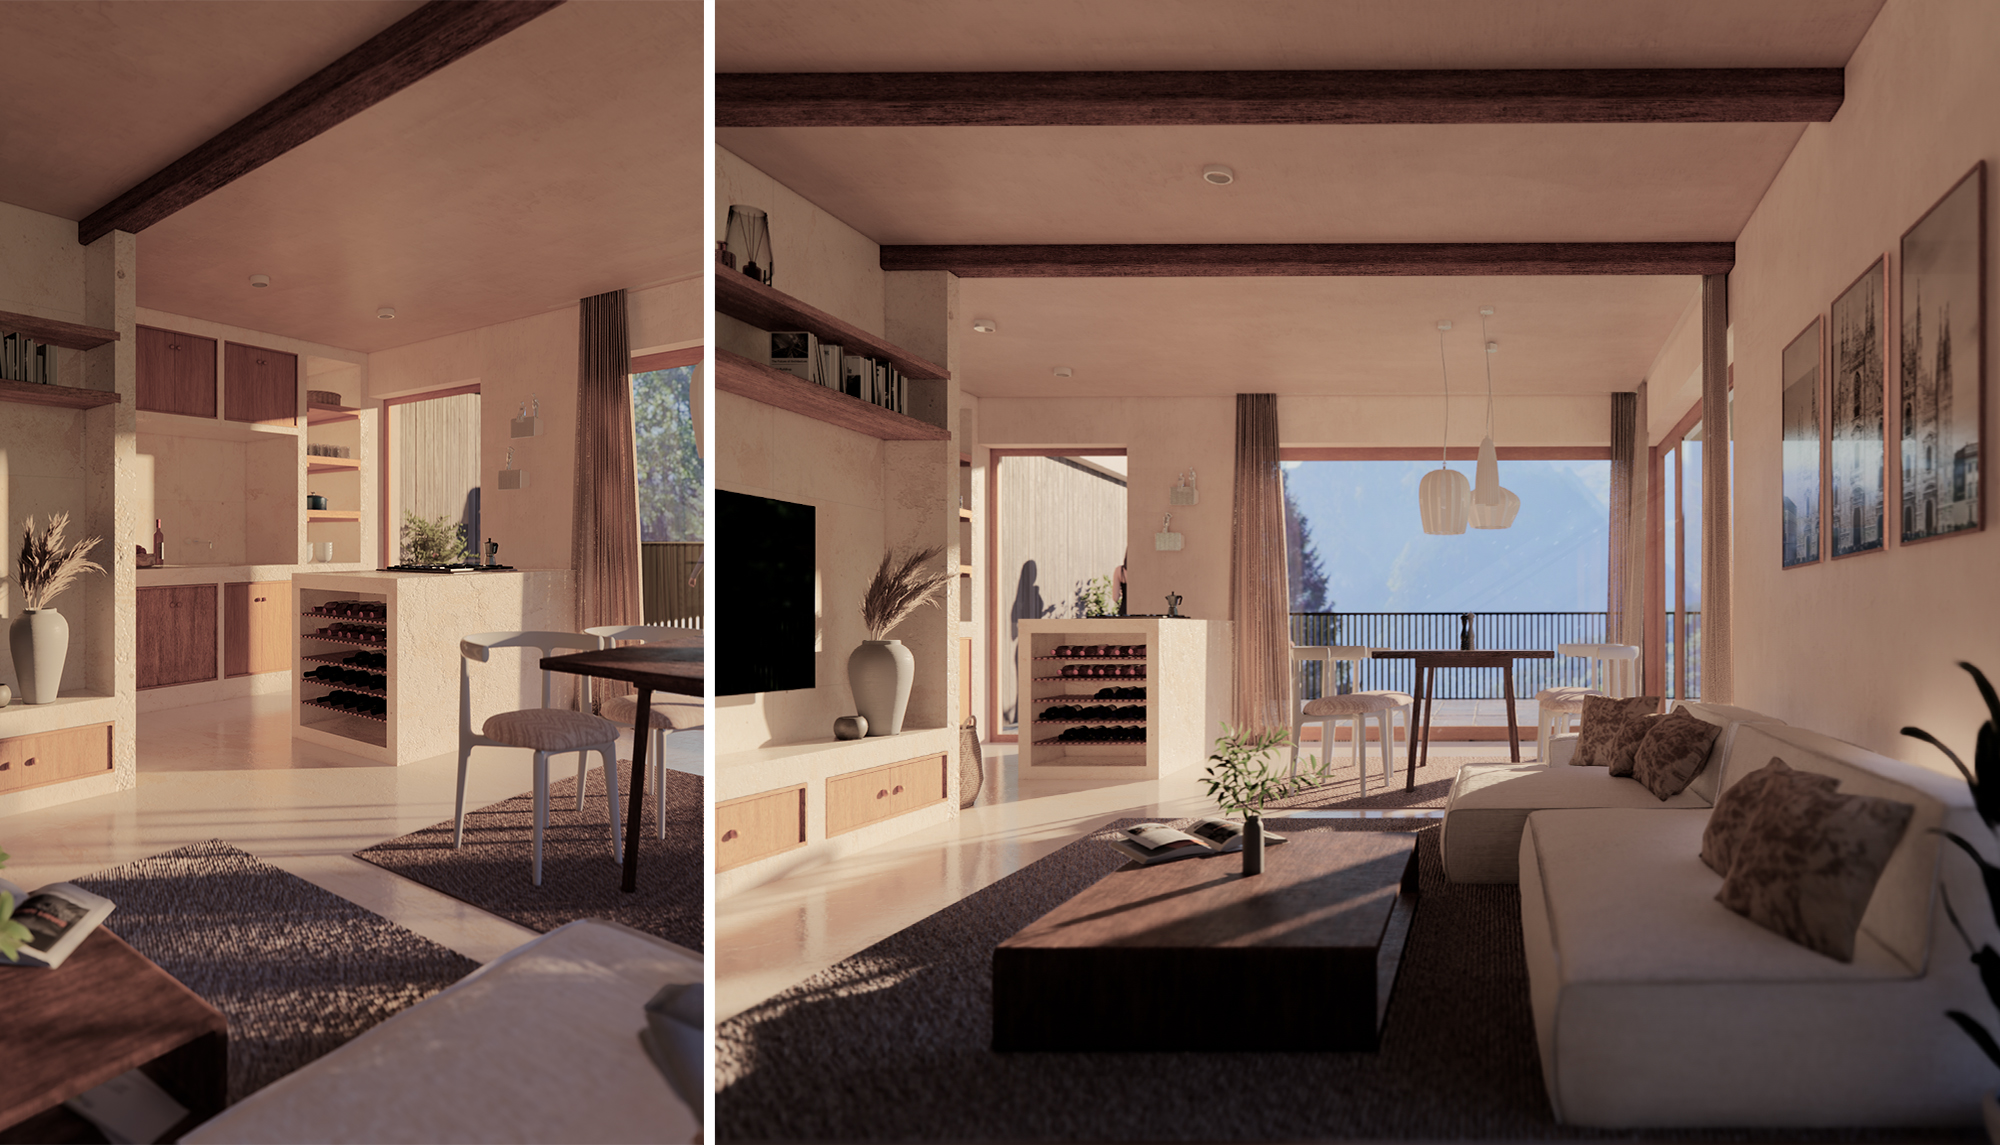 Apartment Design | Wohnbereich hell und minimalistisch | SNOW ARCHITEKTUR